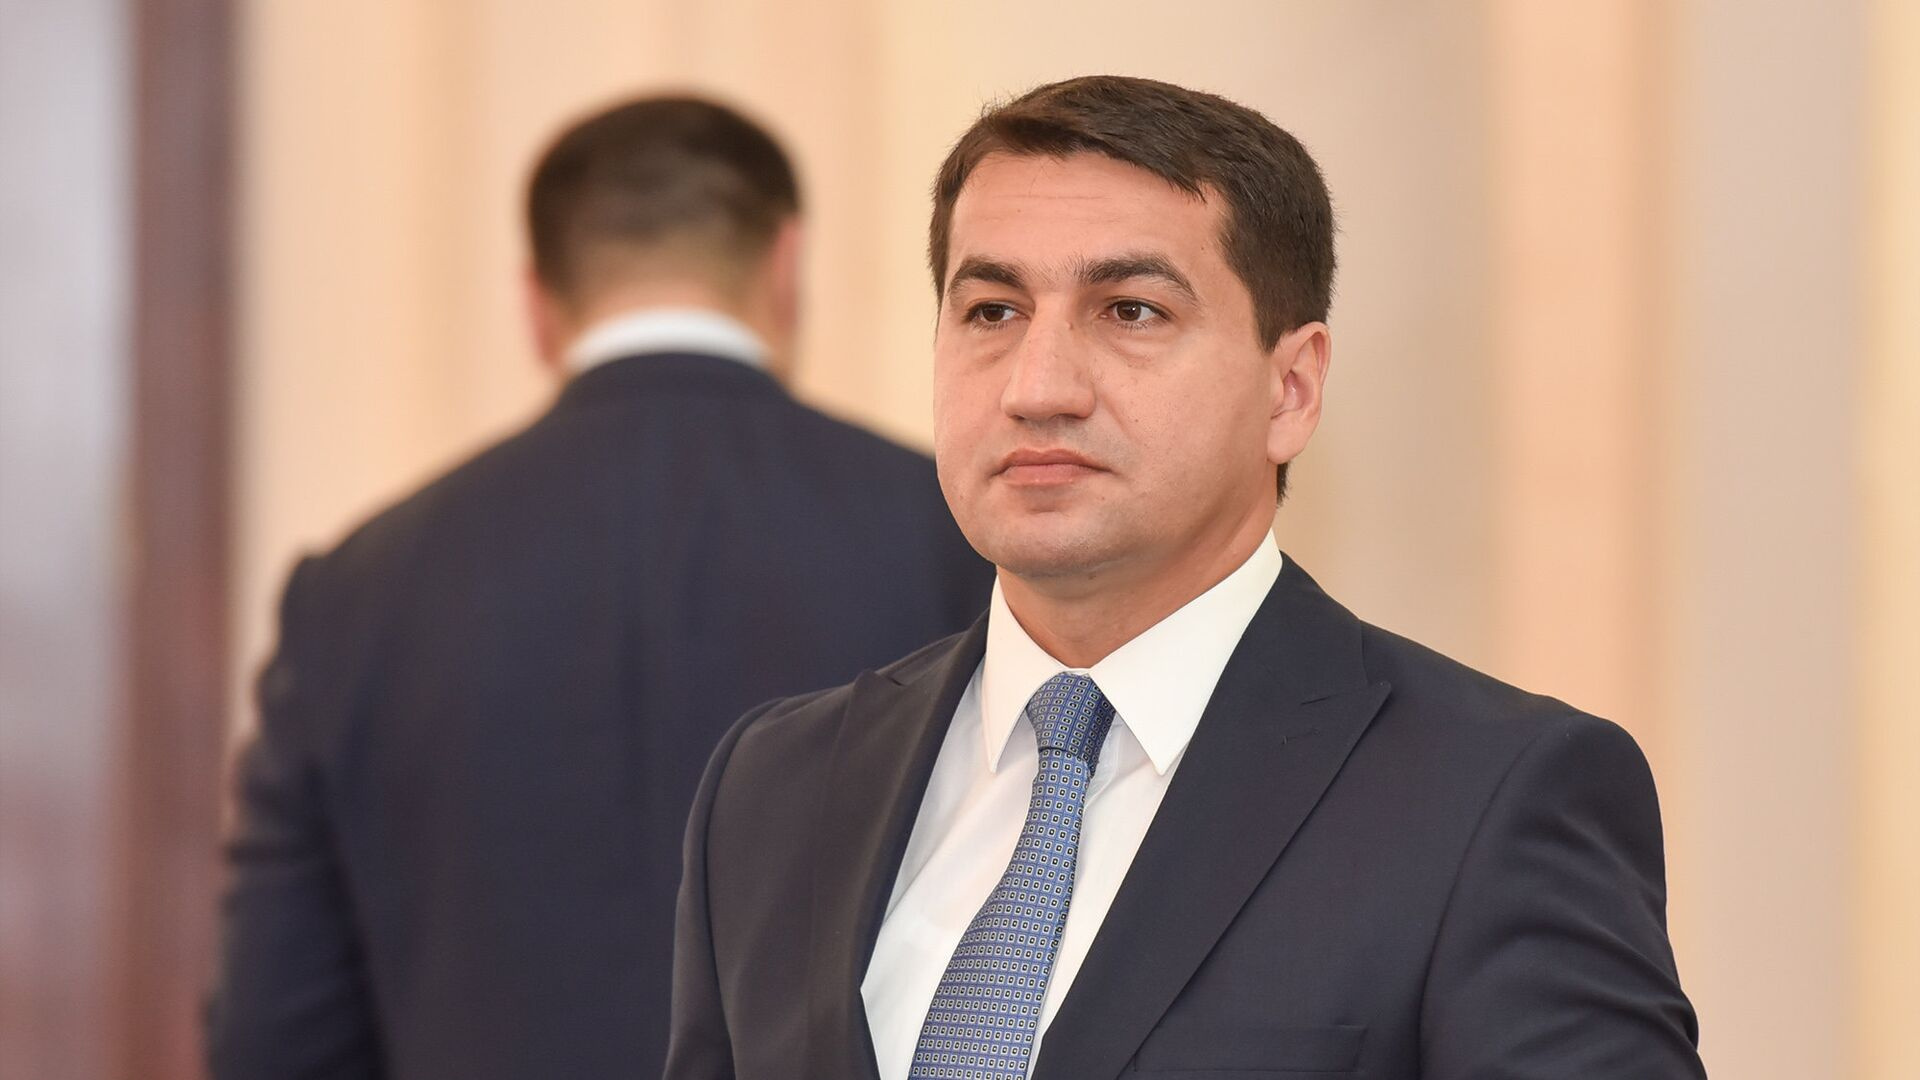  Баку о досрочном выводе РМК: Выполняется решение руководства двух стран  